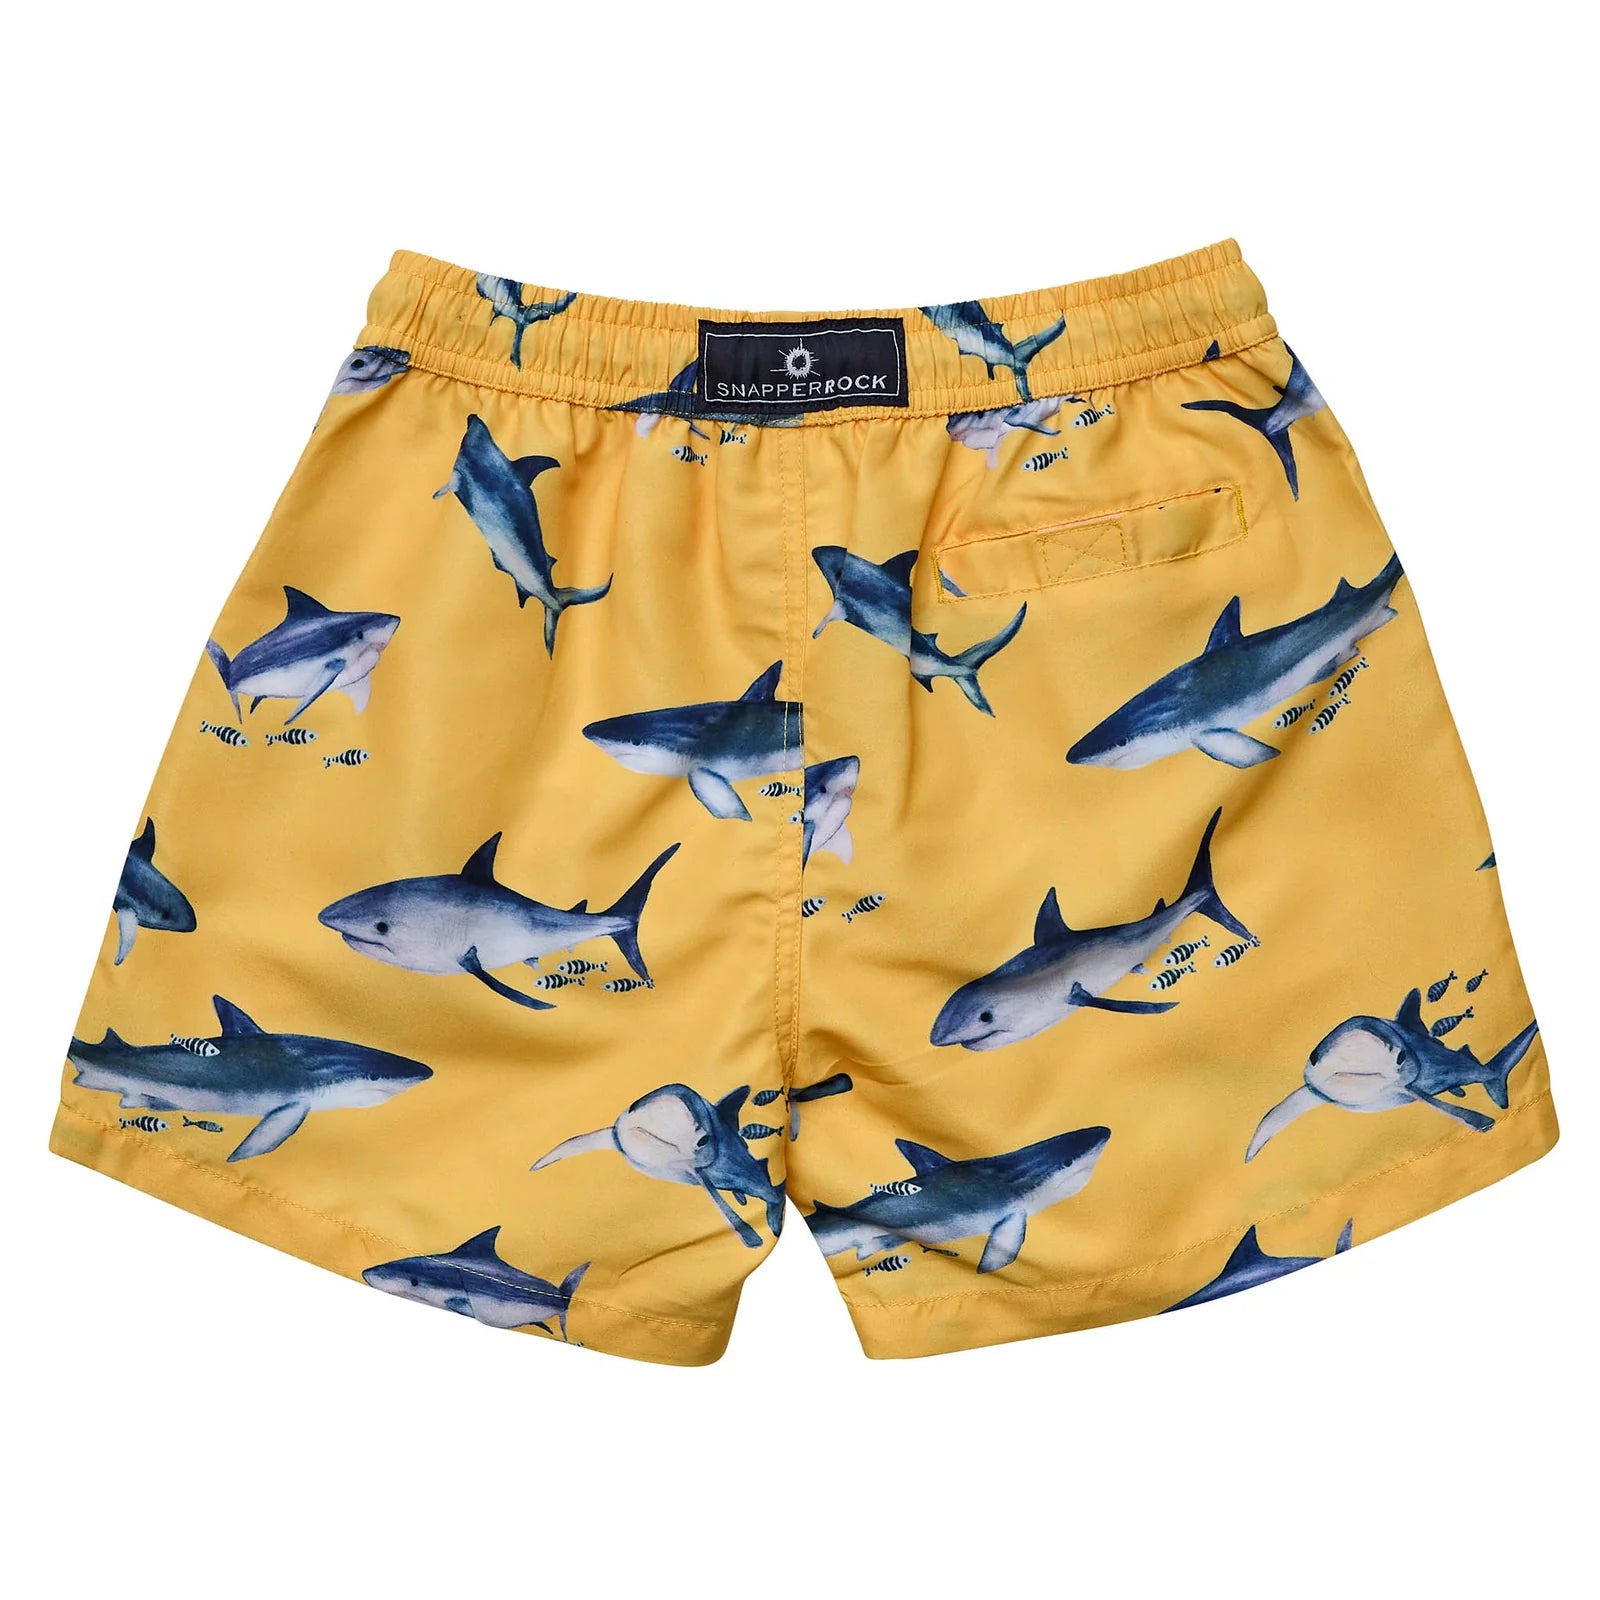 Sunrise Shark Board Shorts